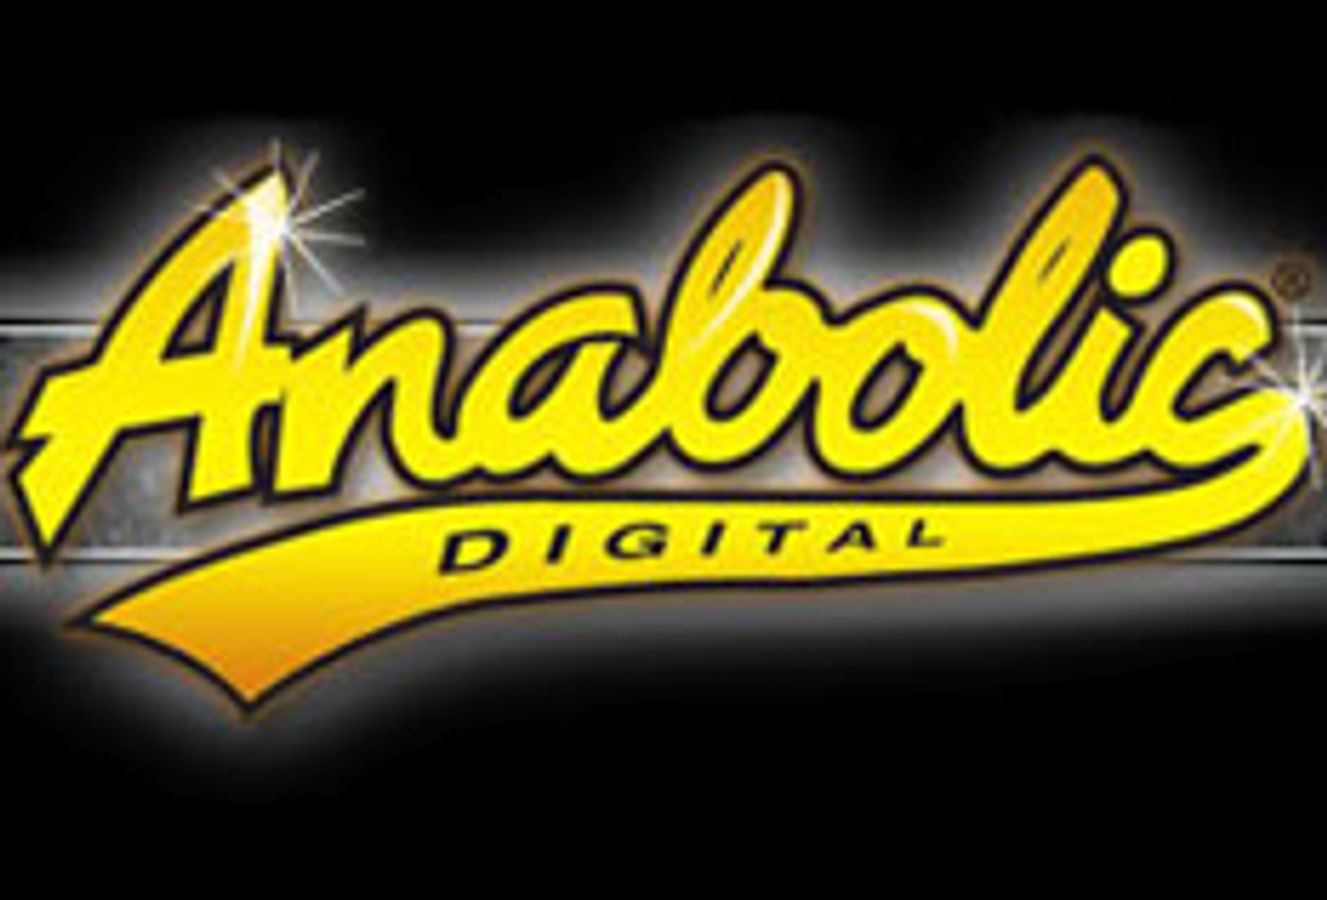 Anabolic Digital